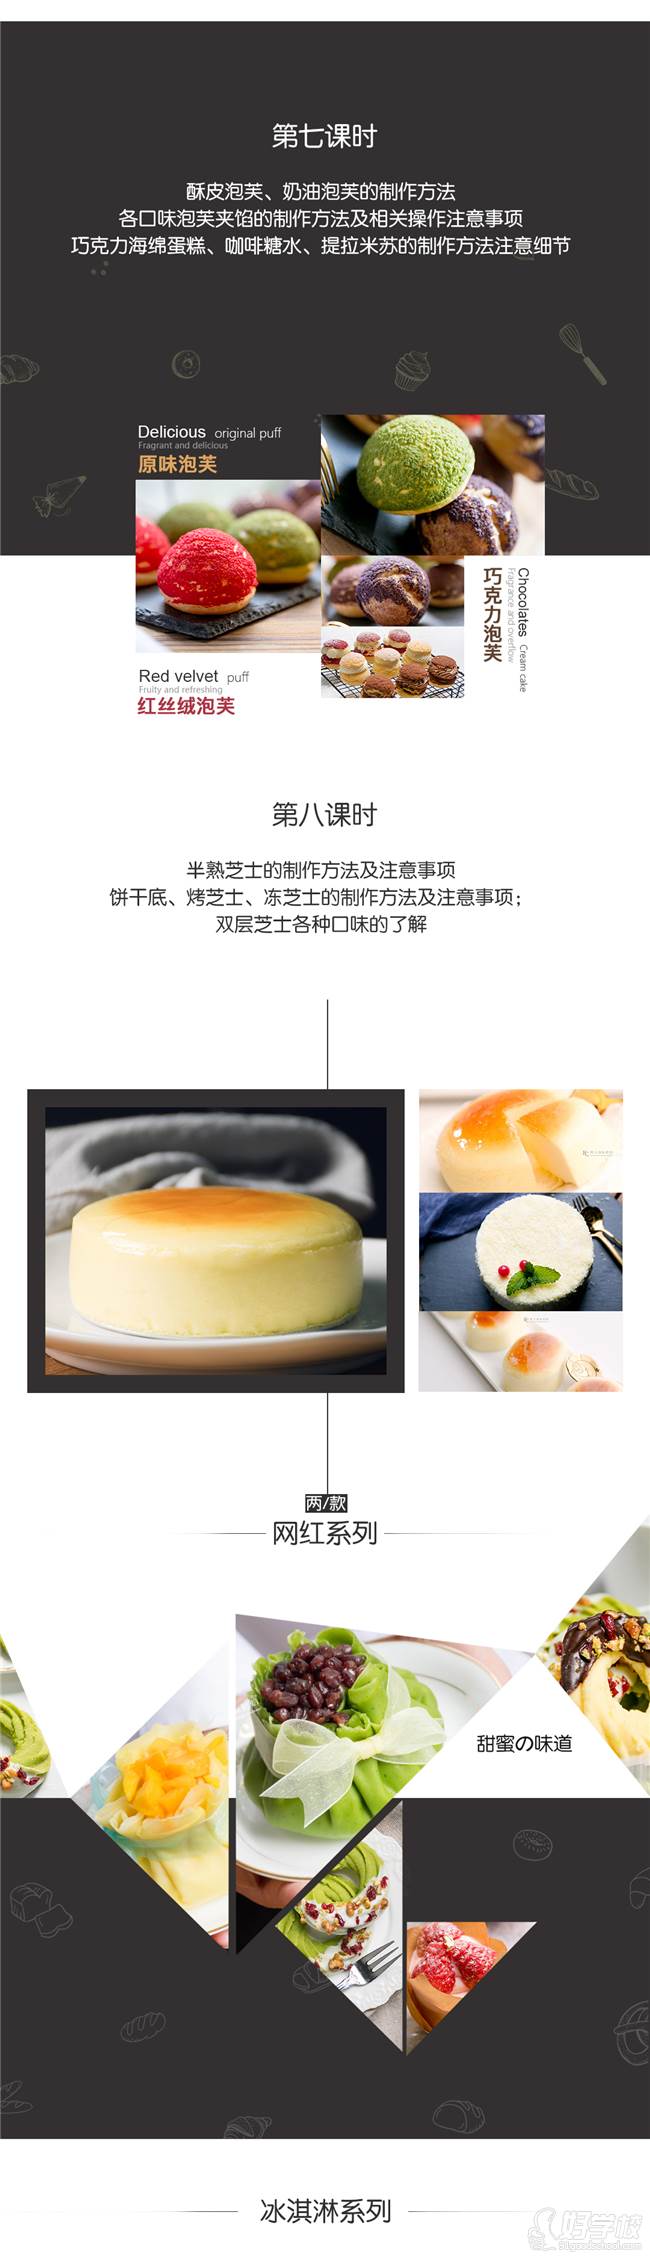 上海梵卡国际烘焙学院  课程内容